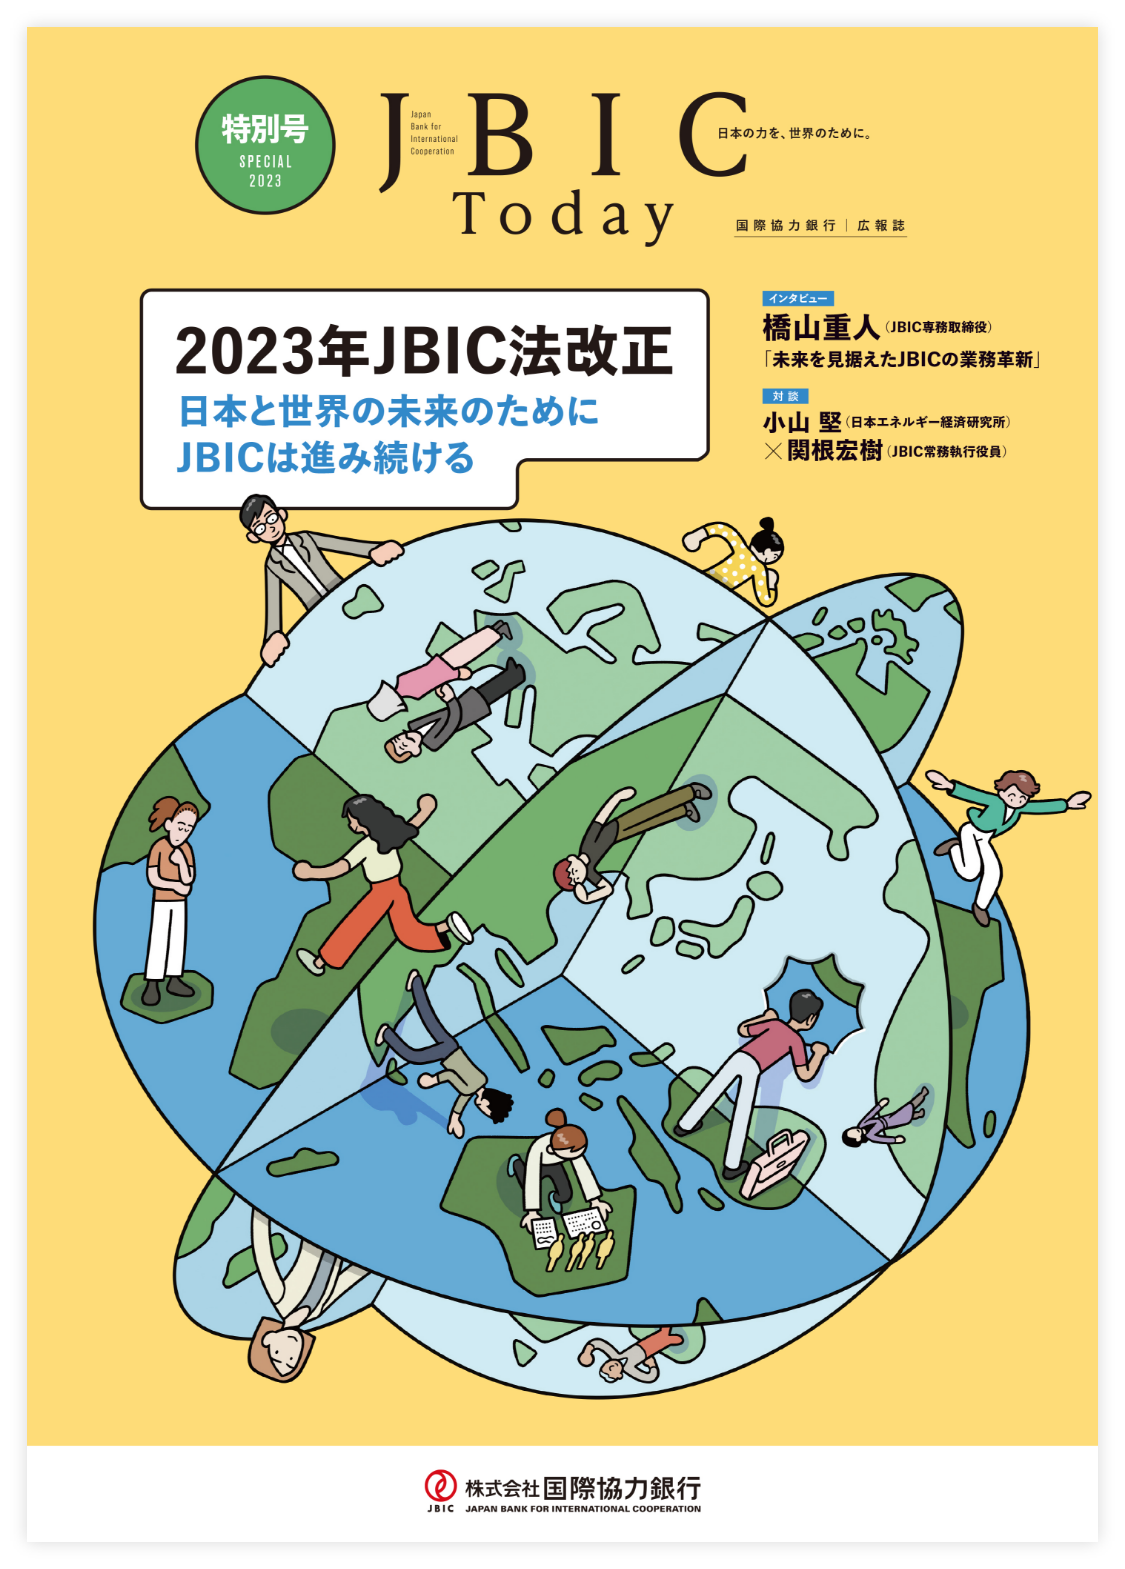 JBIC Today 2023年特別号 2023年JBIC法改正の画像